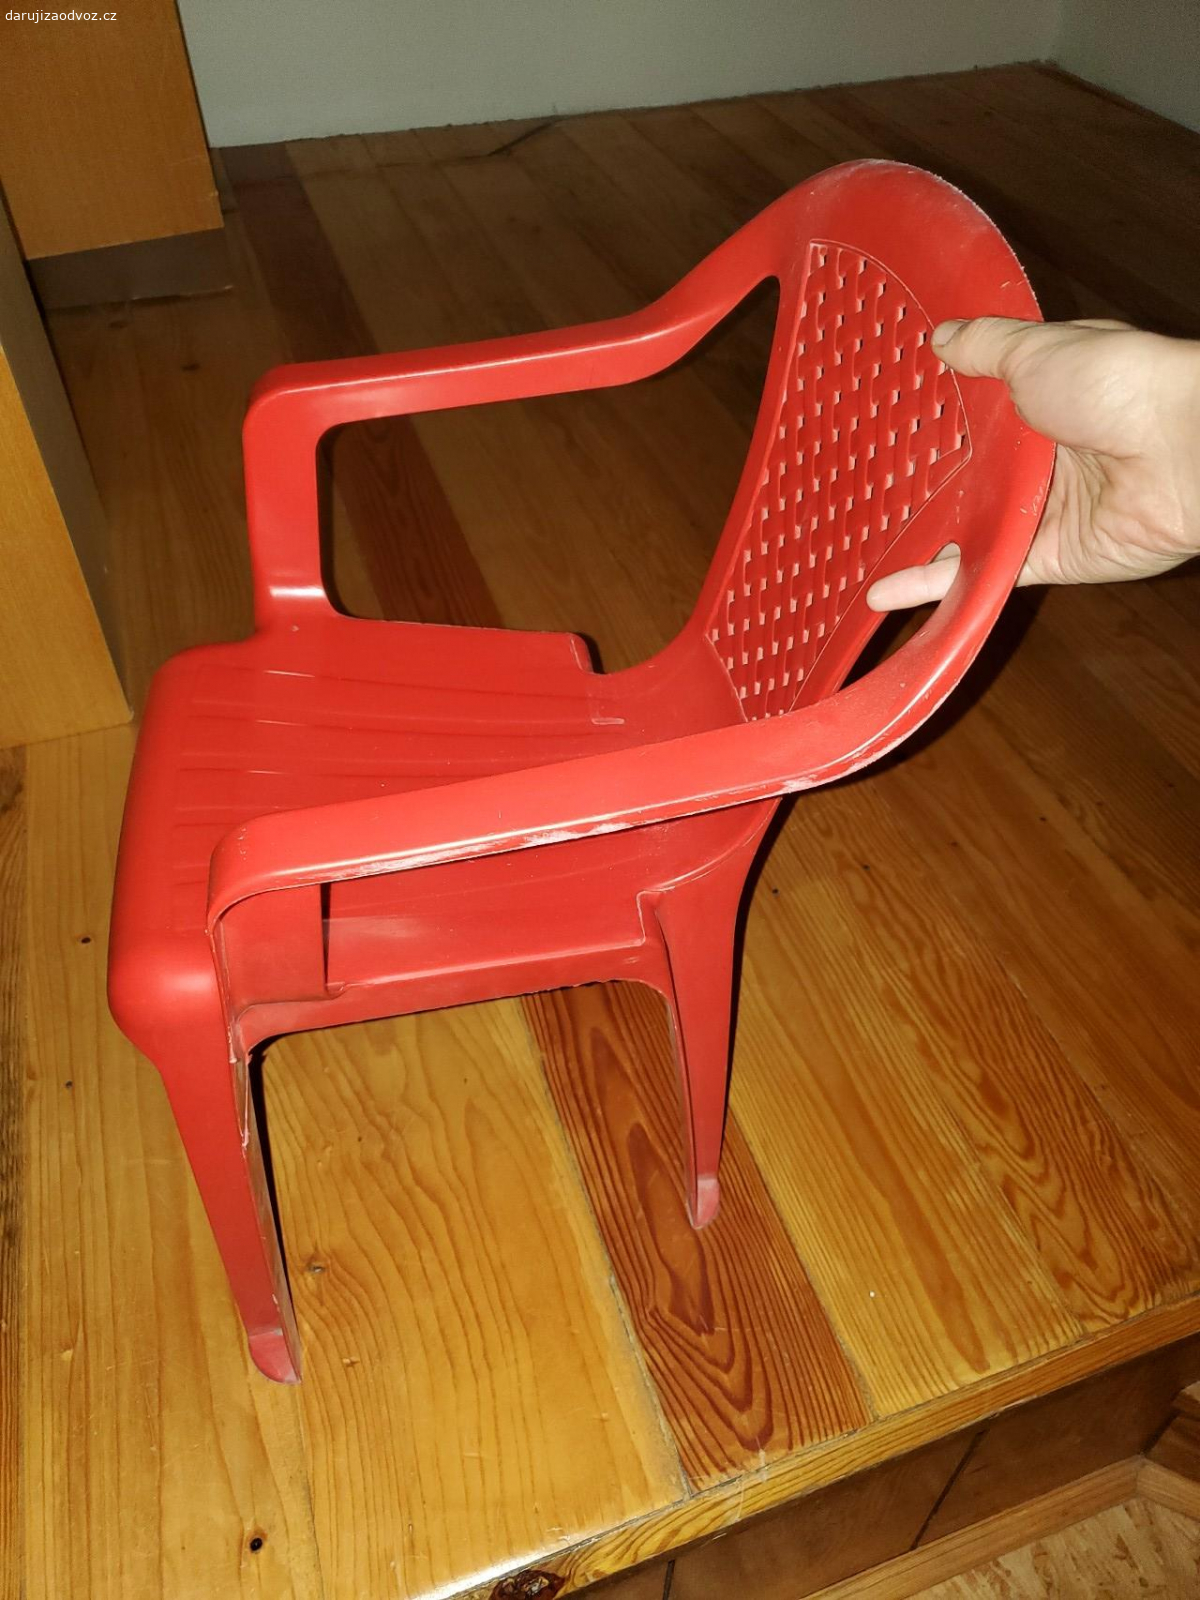 Daruji skříně a dětskou židli. 2 ks otevírací skříně, 1x otevřená a 1x červená dětská plastová židle.